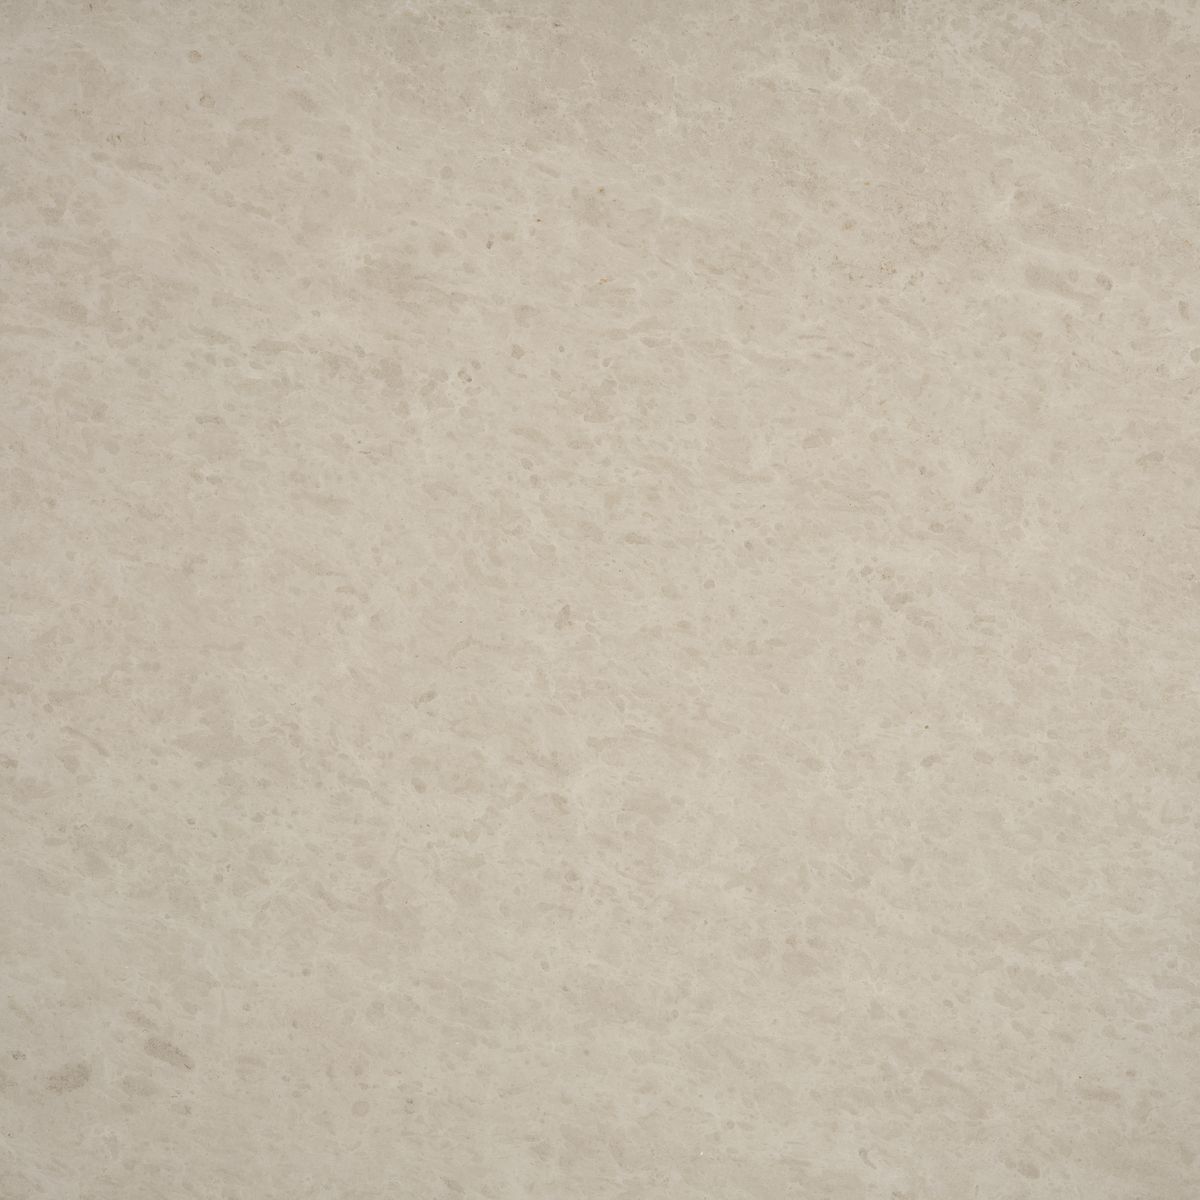 limestone persiano - oyster beige sandstone